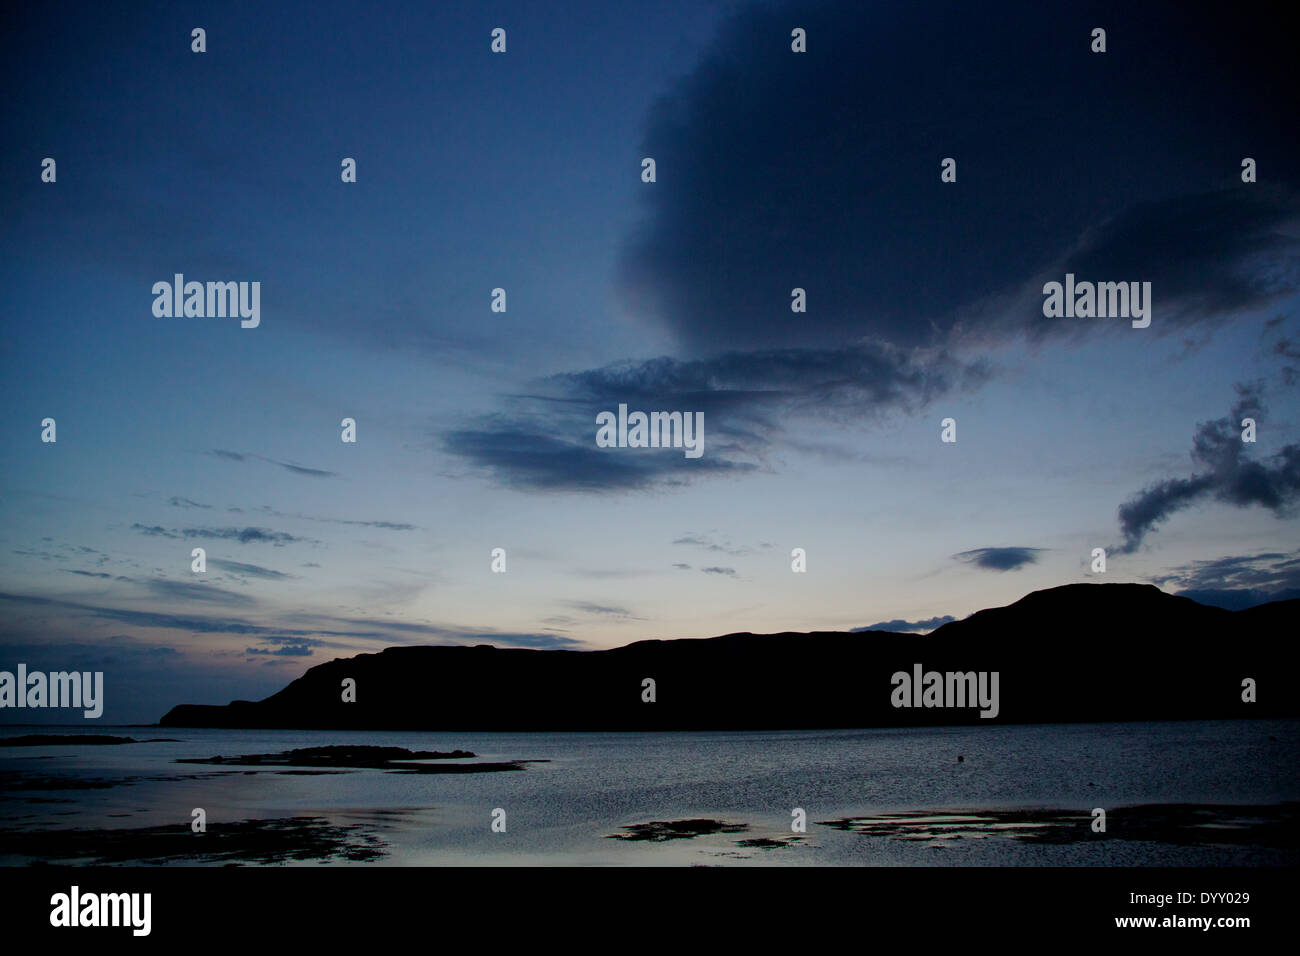 Calgary bay at dusk, Isle of Mull, Argyle, Inner Hebrides, Scottish ...